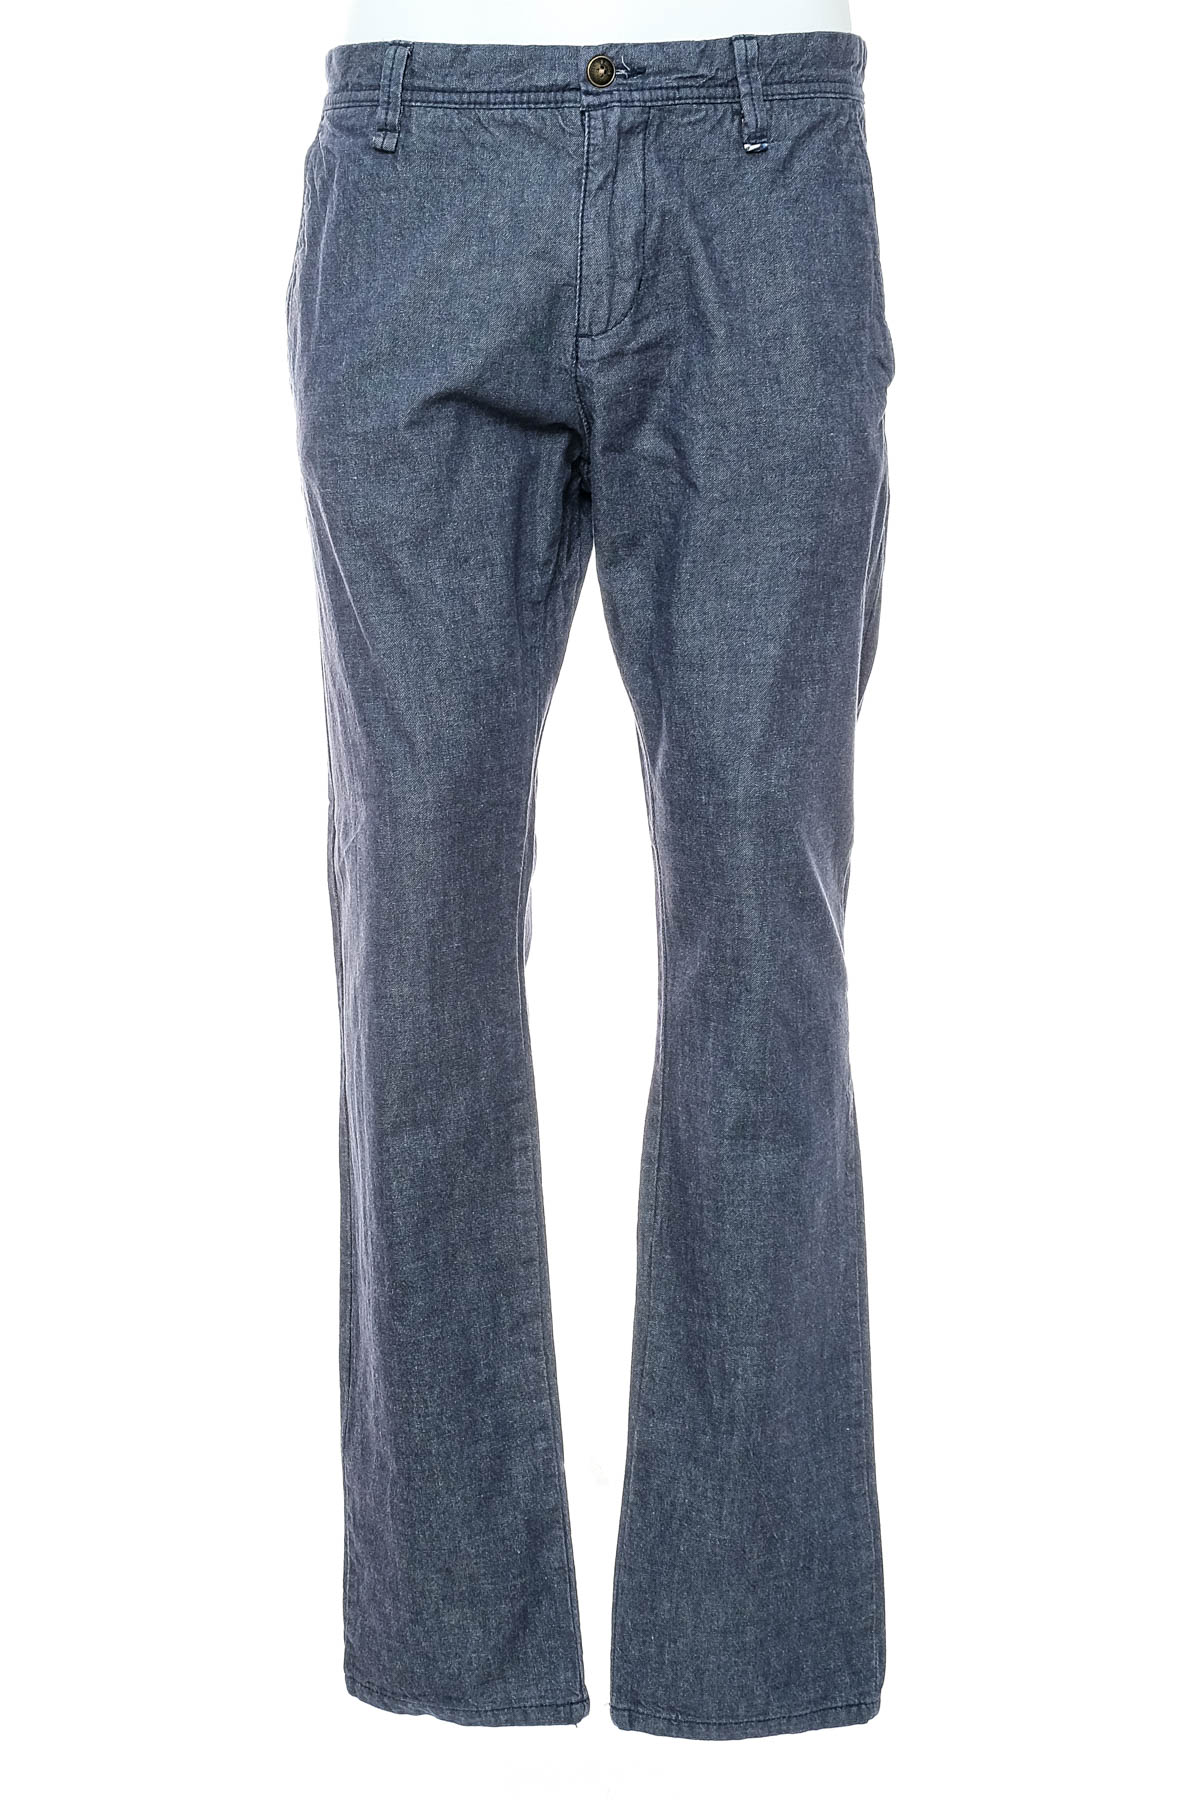 Men's jeans - S.Oliver - 0